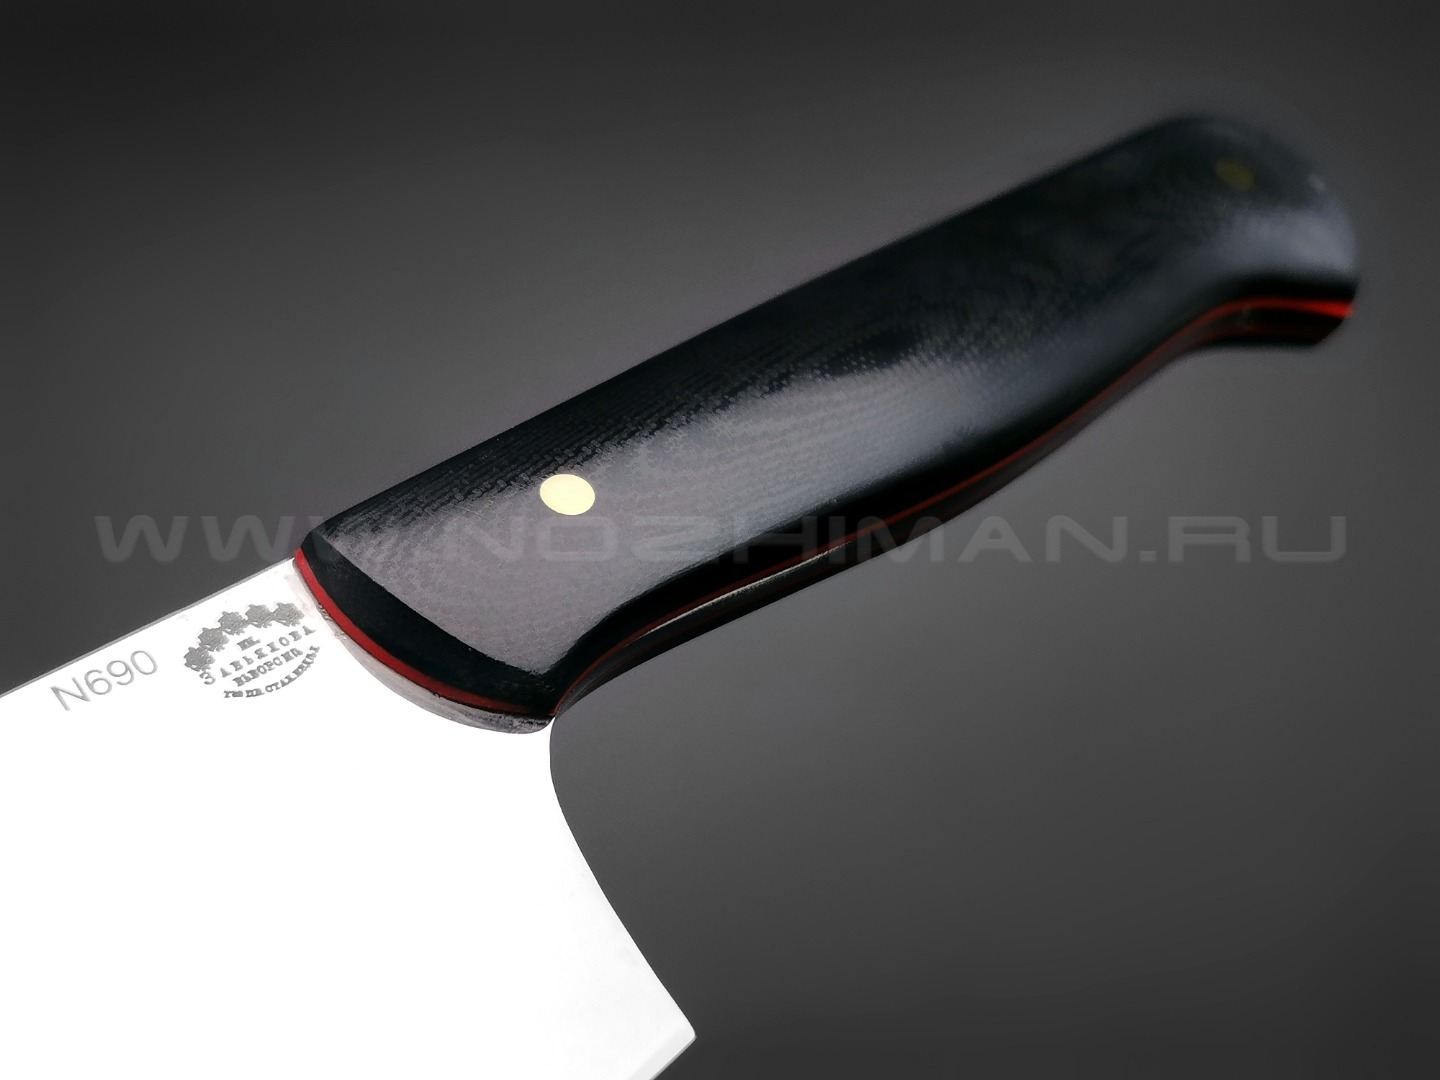 Набор из 3-х кухонных ножей, сталь N690, рукоять G10 black (Товарищество Завьялова)